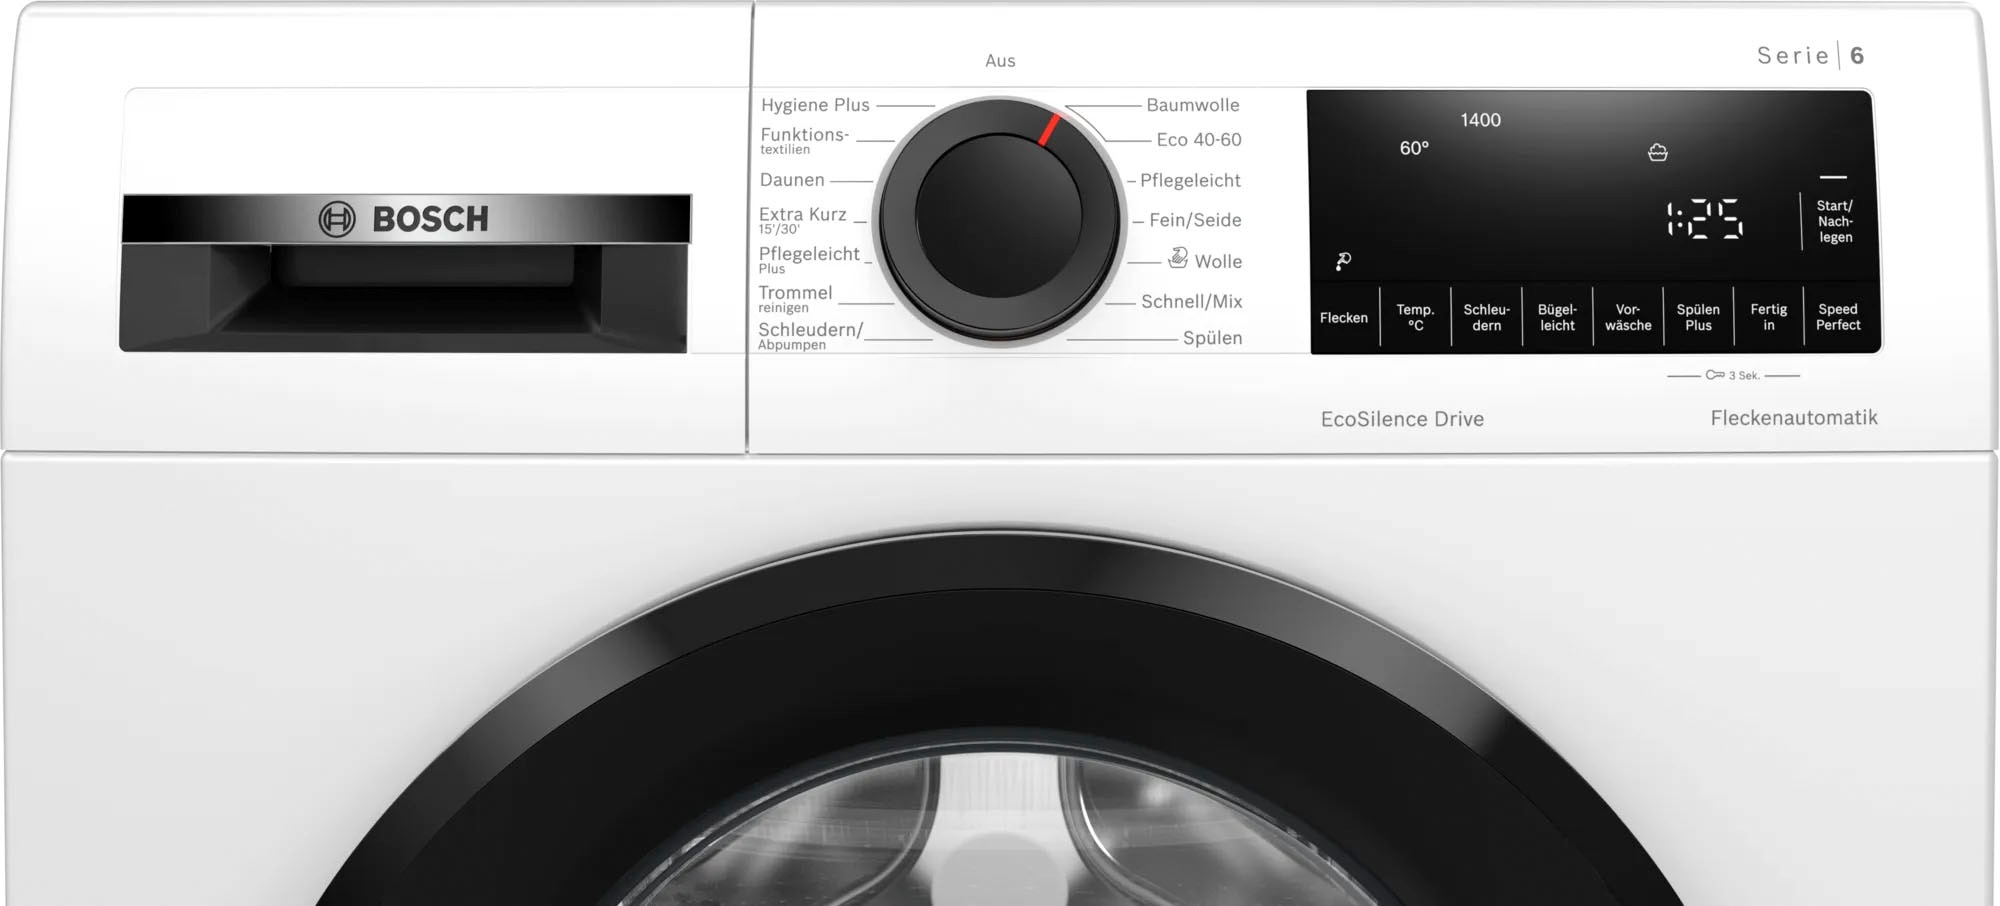 Top-Performance-Marketing BOSCH Waschmaschine U/min WGG154021, OTTO bei kg, 1400 bestellen 10 »WGG154021«